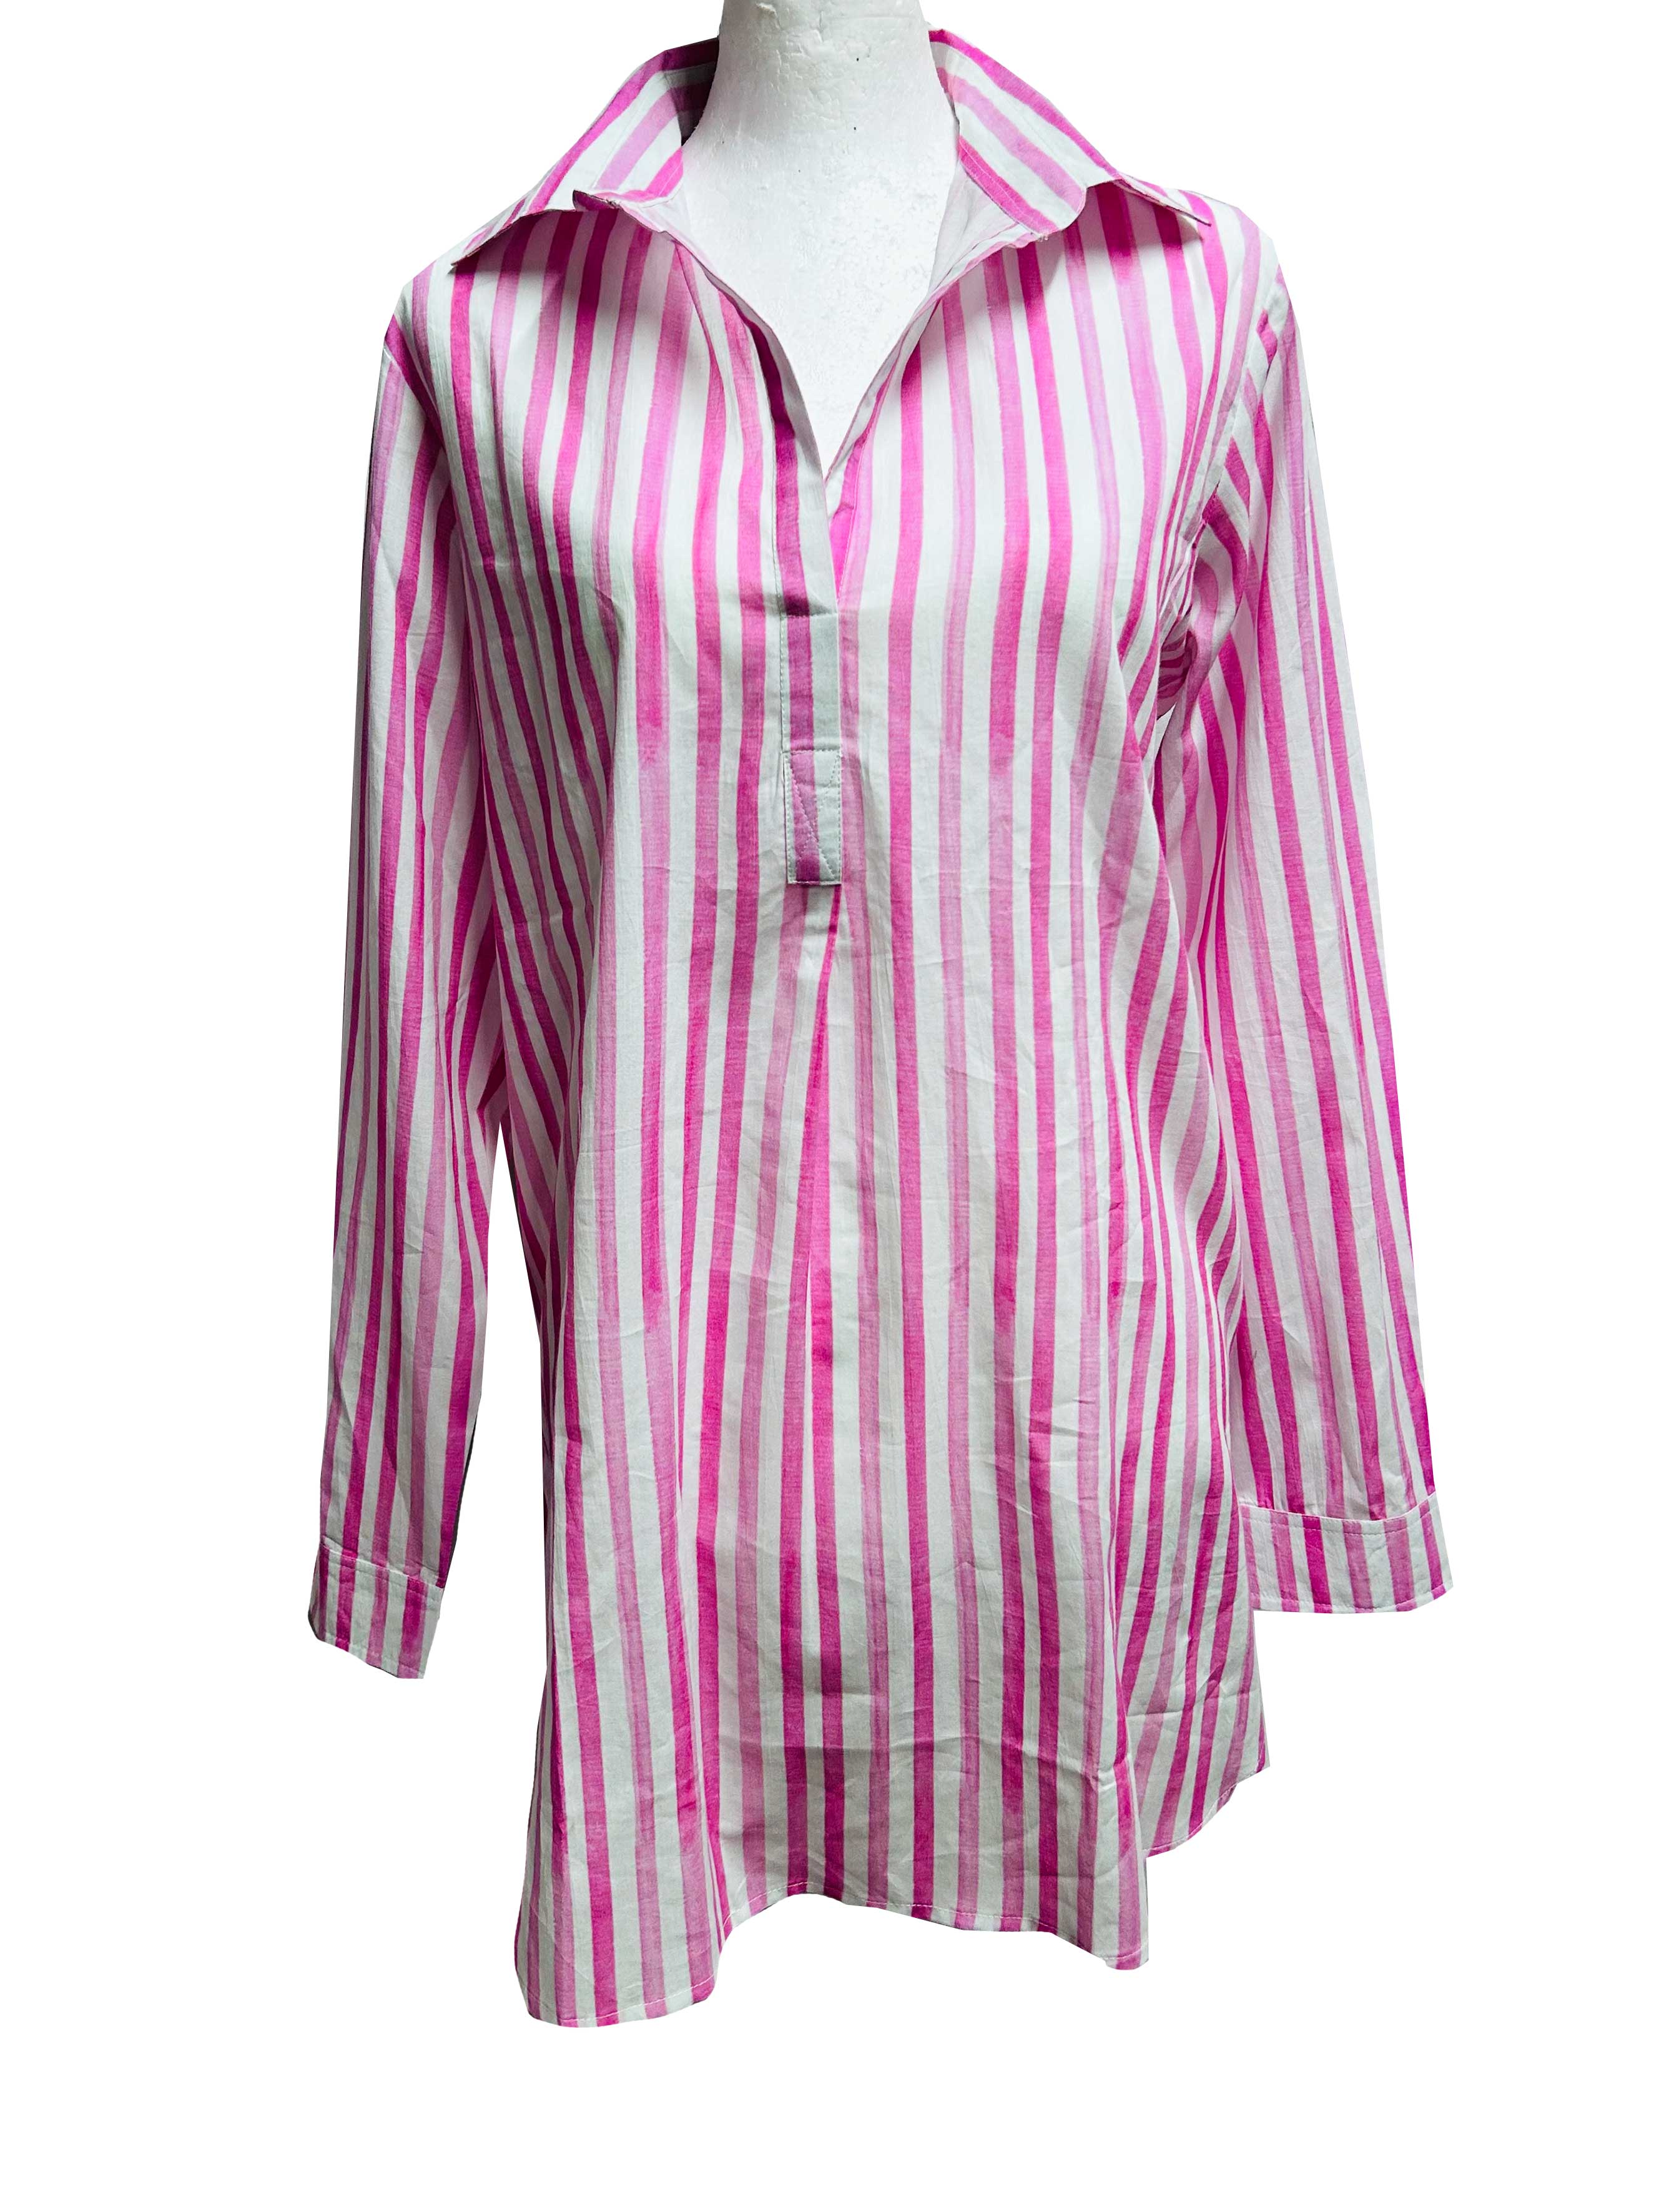 Julia Shirt - Candy Stripe - Cotton